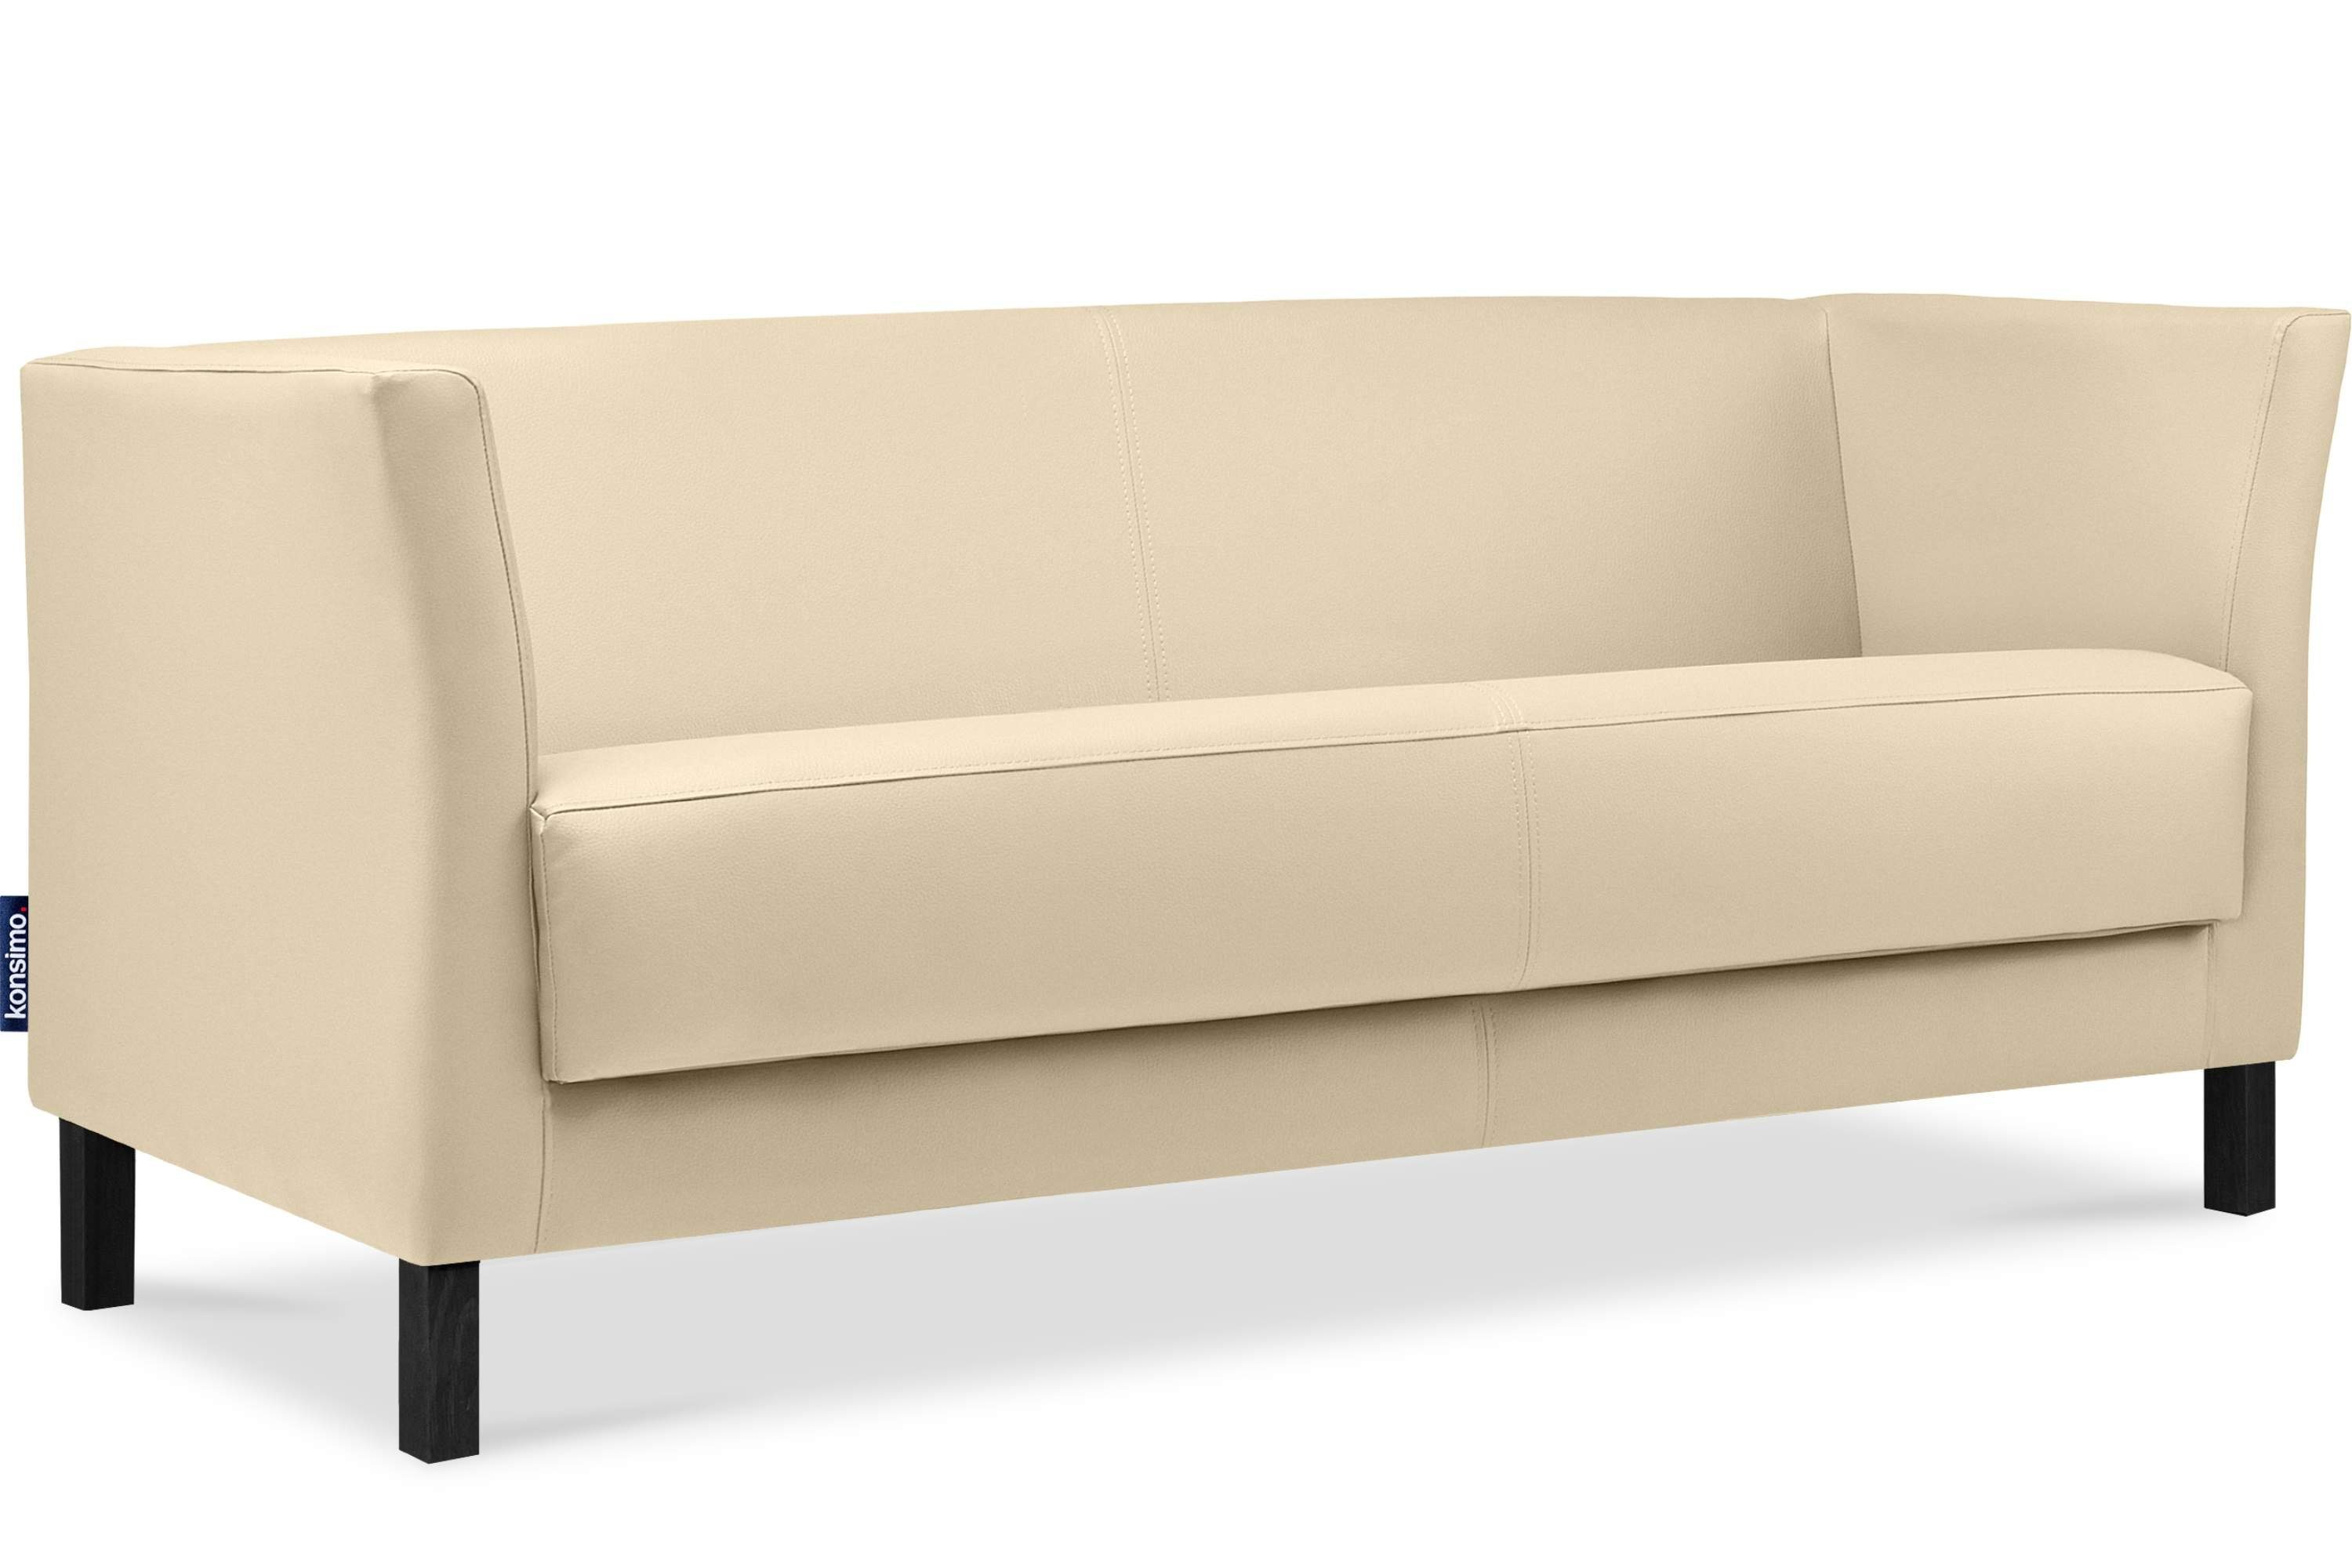 Sofa cremefarben hohe Beine, Kunstleder Konsimo Teile, Sitzfläche ESPECTO cremefarben Rückenlehne, 3 weiche | Sitzer, Sofa 1 und hohe